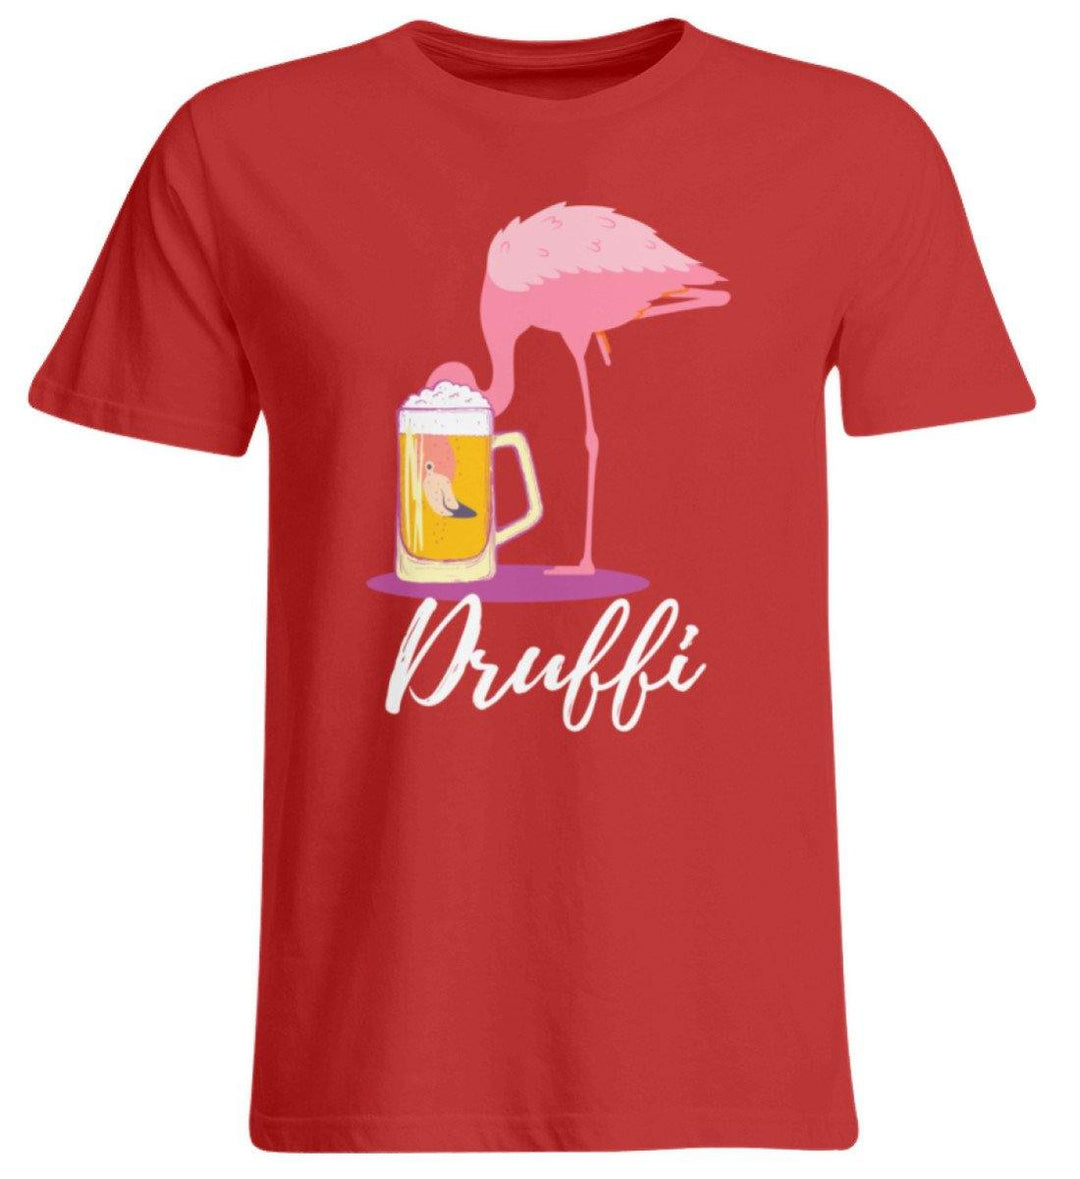 Flamingo Druffi - Words on Shirt  - Übergrößenshirt - Words on Shirts Sag es mit dem Mittelfinger Shirts Hoodies Sweatshirt Taschen Gymsack Spruch Sprüche Statement